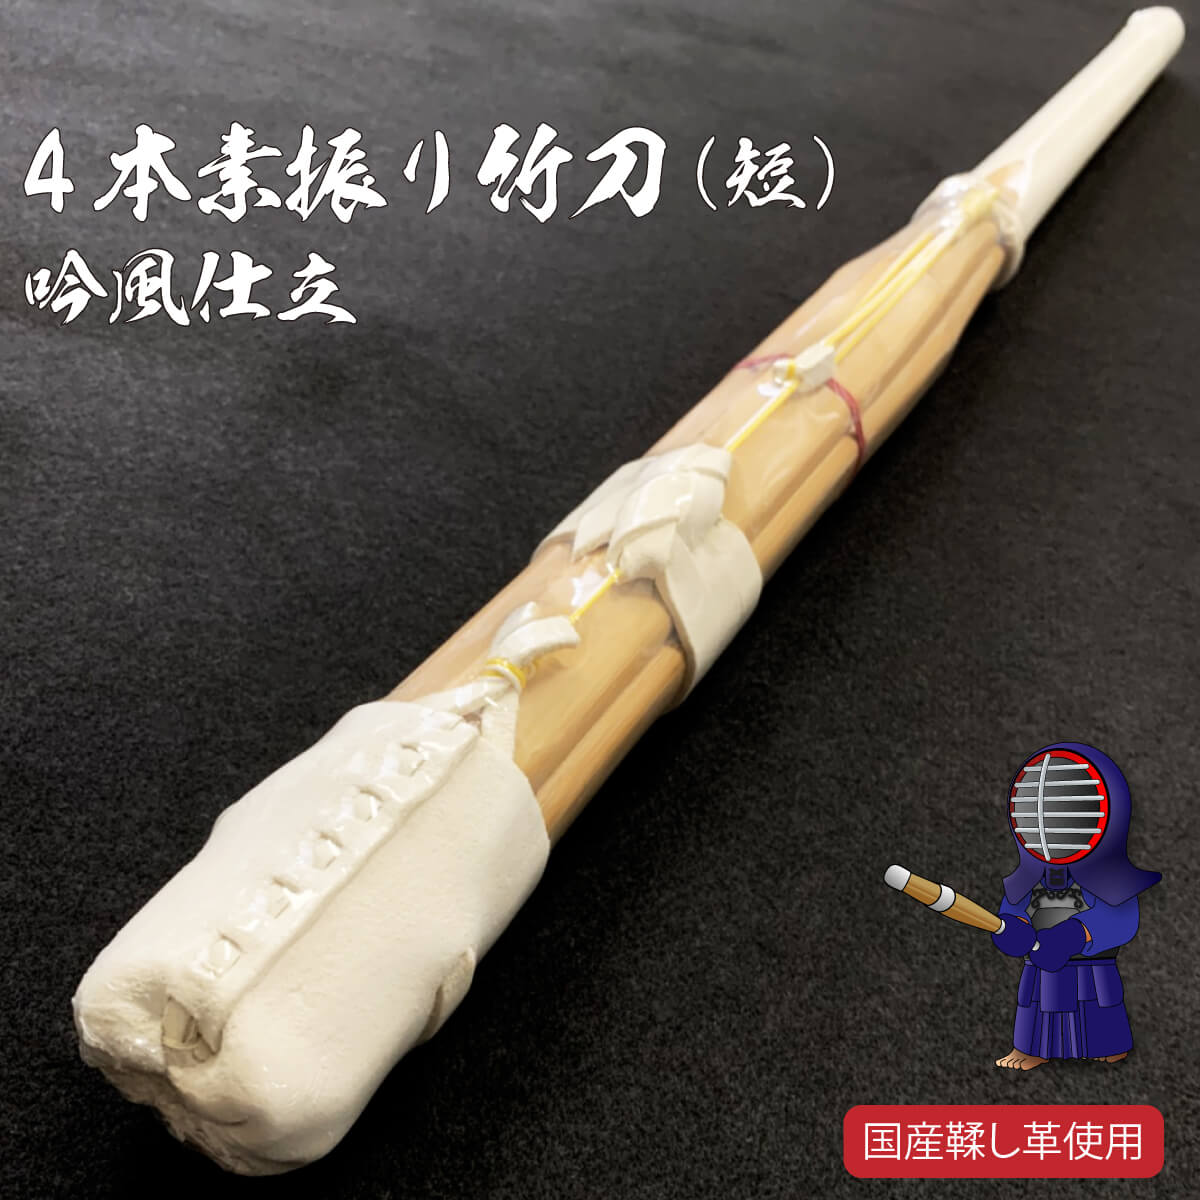 4本 素振竹刀 – 西日本武道具